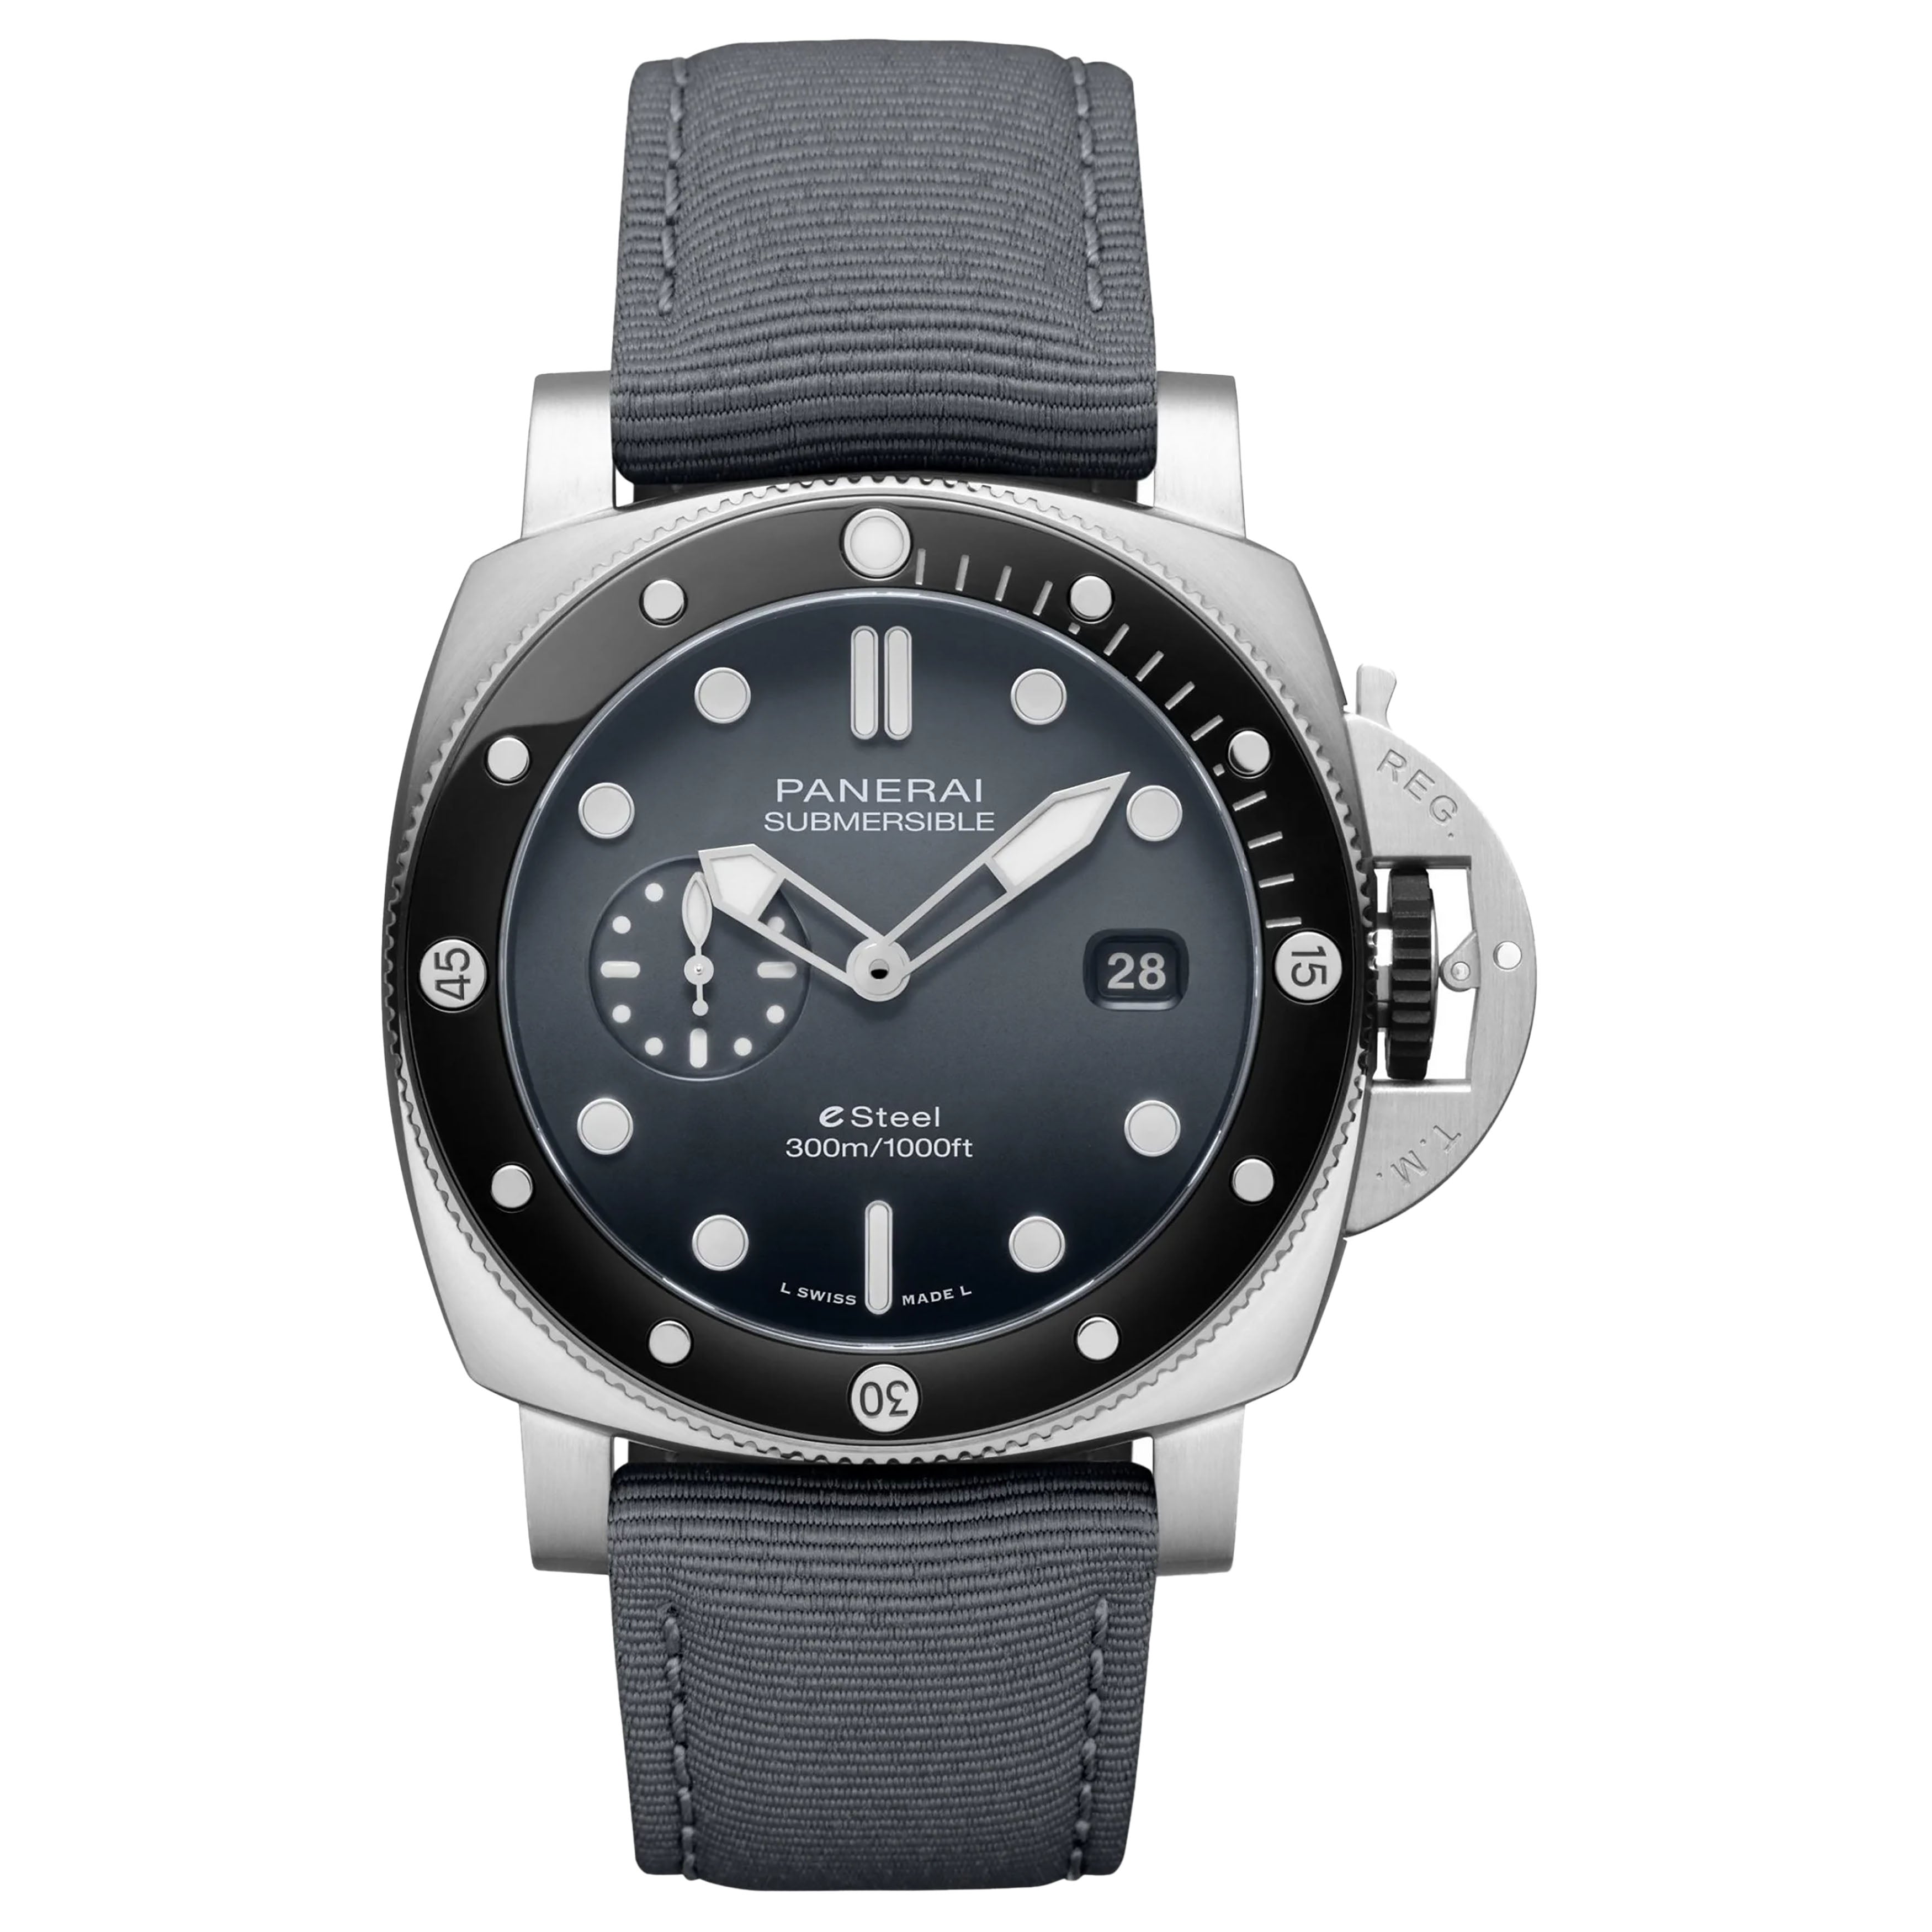 Panerai Submersible QuarantaQuattro eSteel Grigio Roccia Watch, 44mm Gray Dial, PAM01288